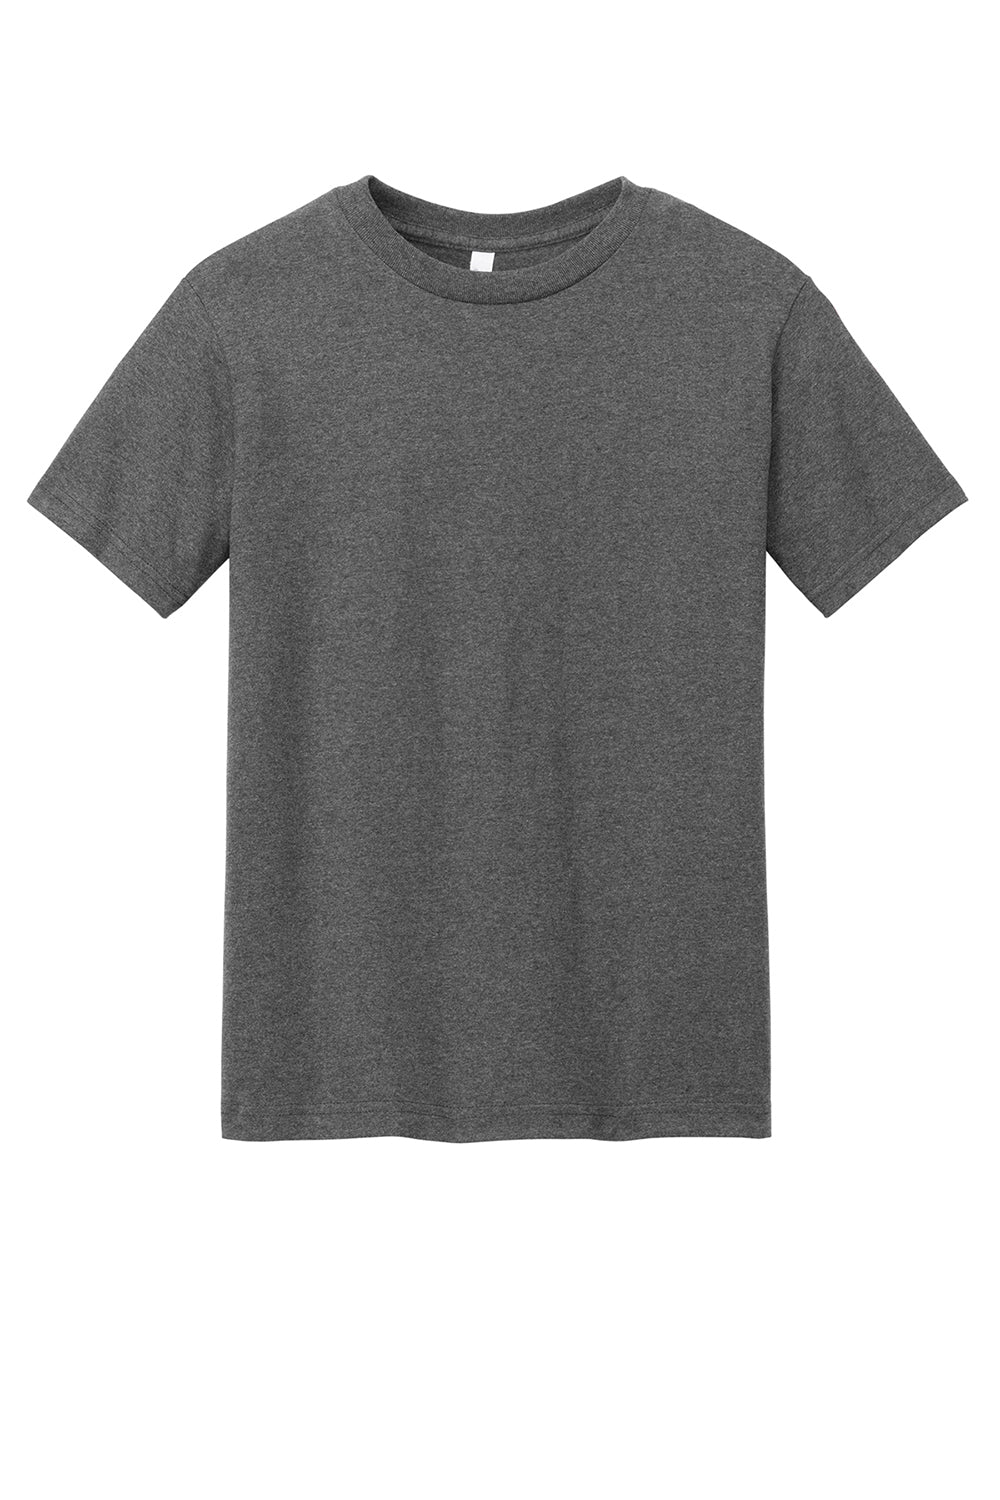 American Apparel 1301/AL1301 Mens Short Sleeve Crewneck T-Shirt Heather Charcoal Grey Flat Front